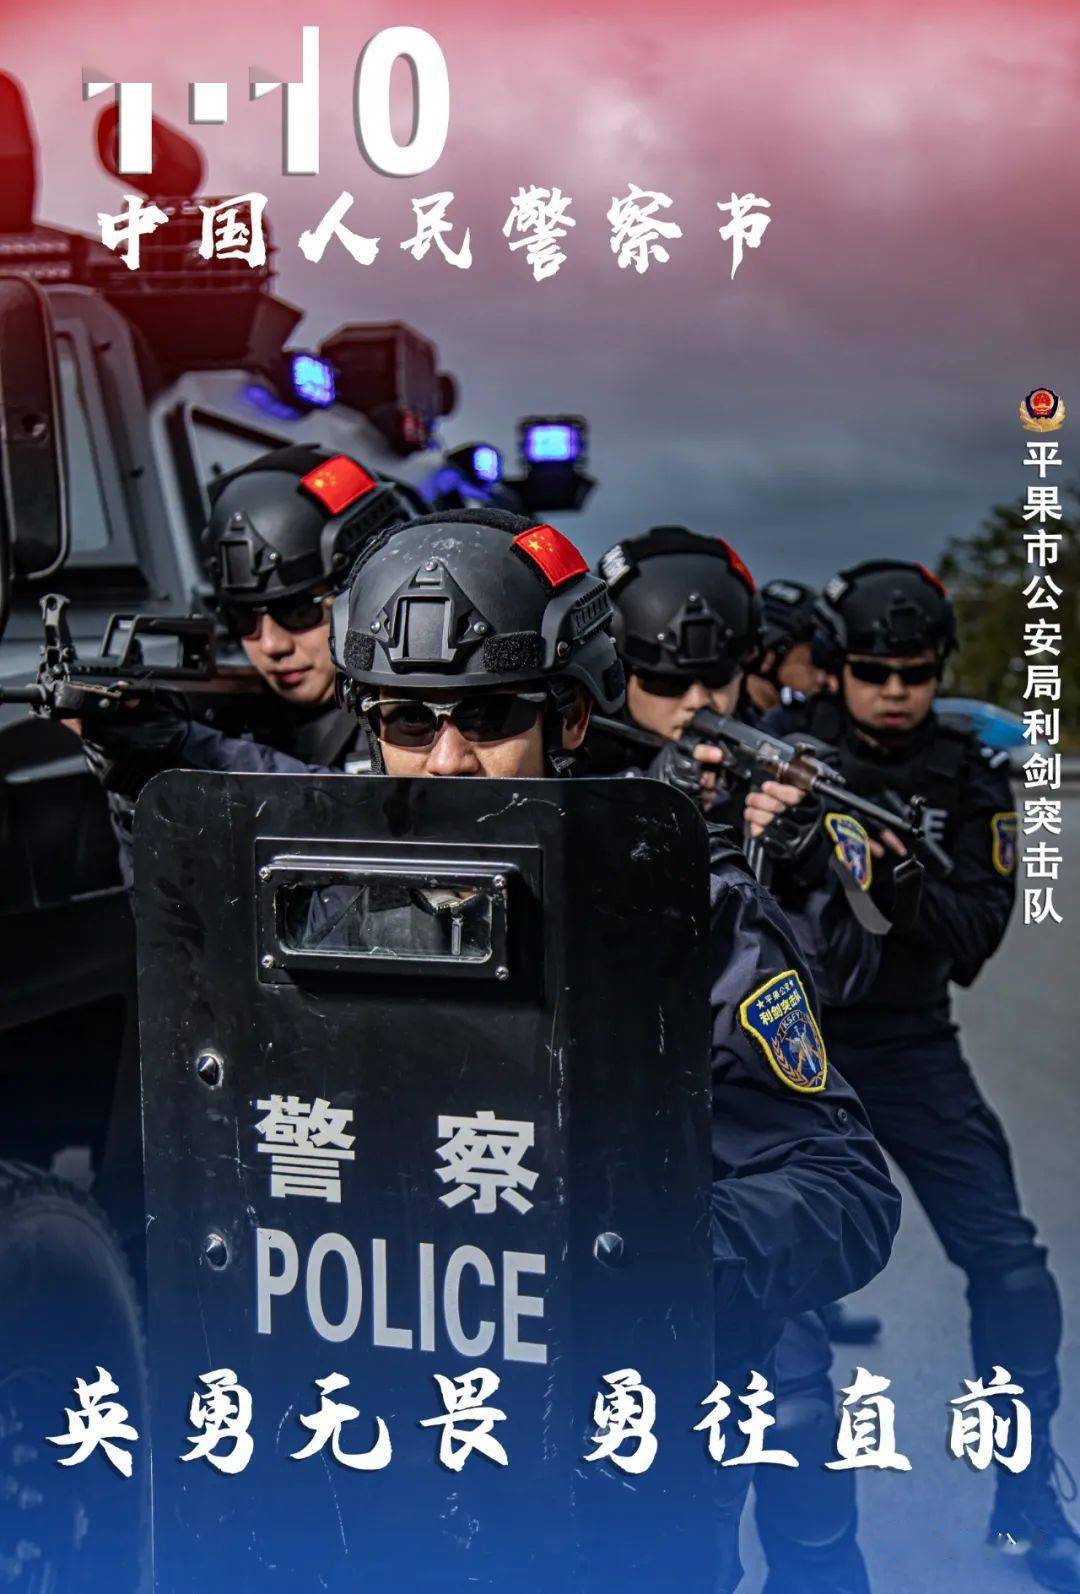 平果公安一组超燃海报致敬首个中国人民警察节